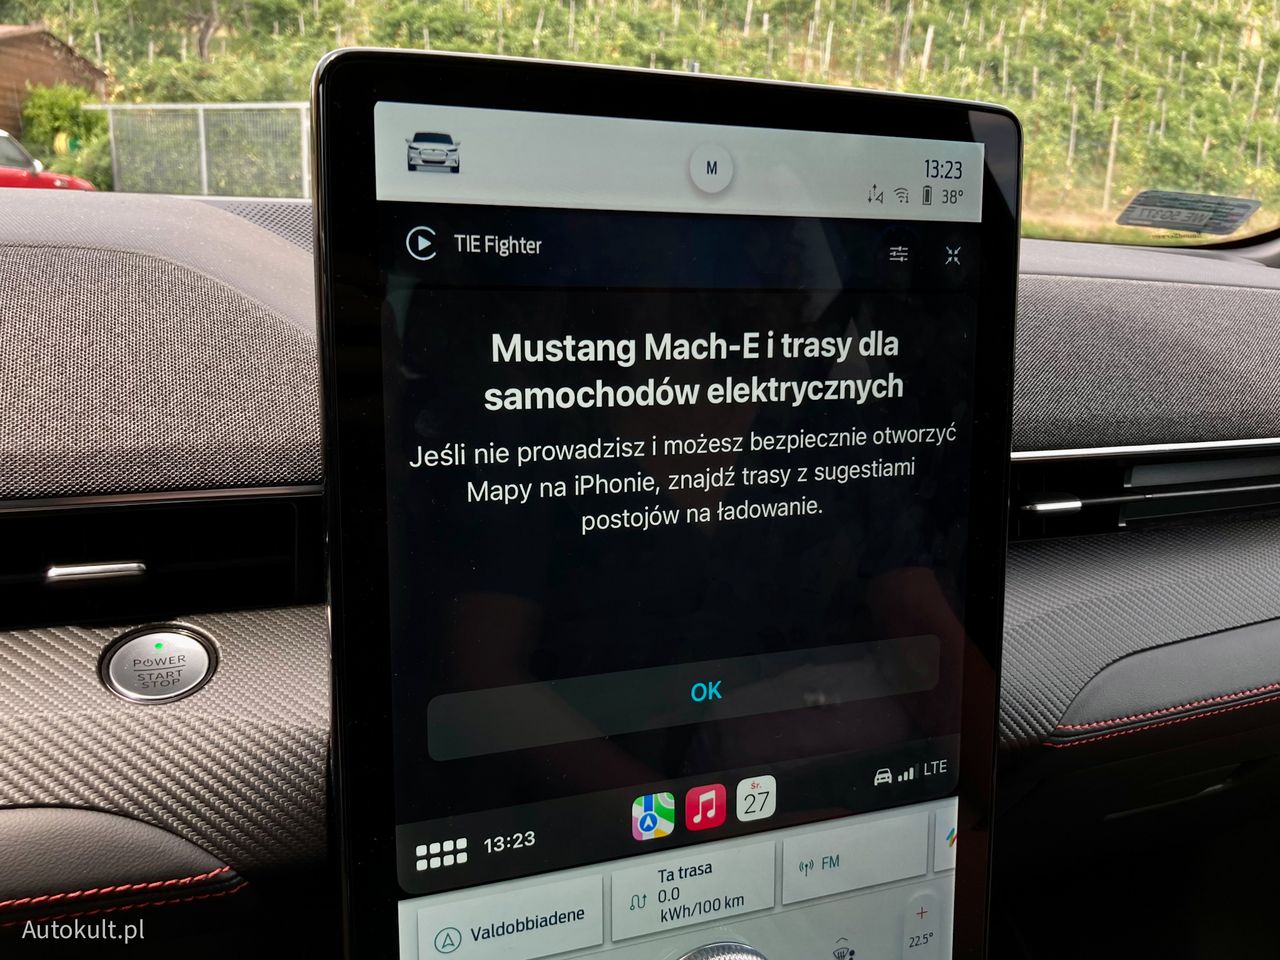 Mapy Apple integrują się z Mustangiem i są w stanie zaplanować trasę z ładowarkami, uwzględniając poziom akumulatora. Funkcja ta jednak nie zachwyca swoim działaniem